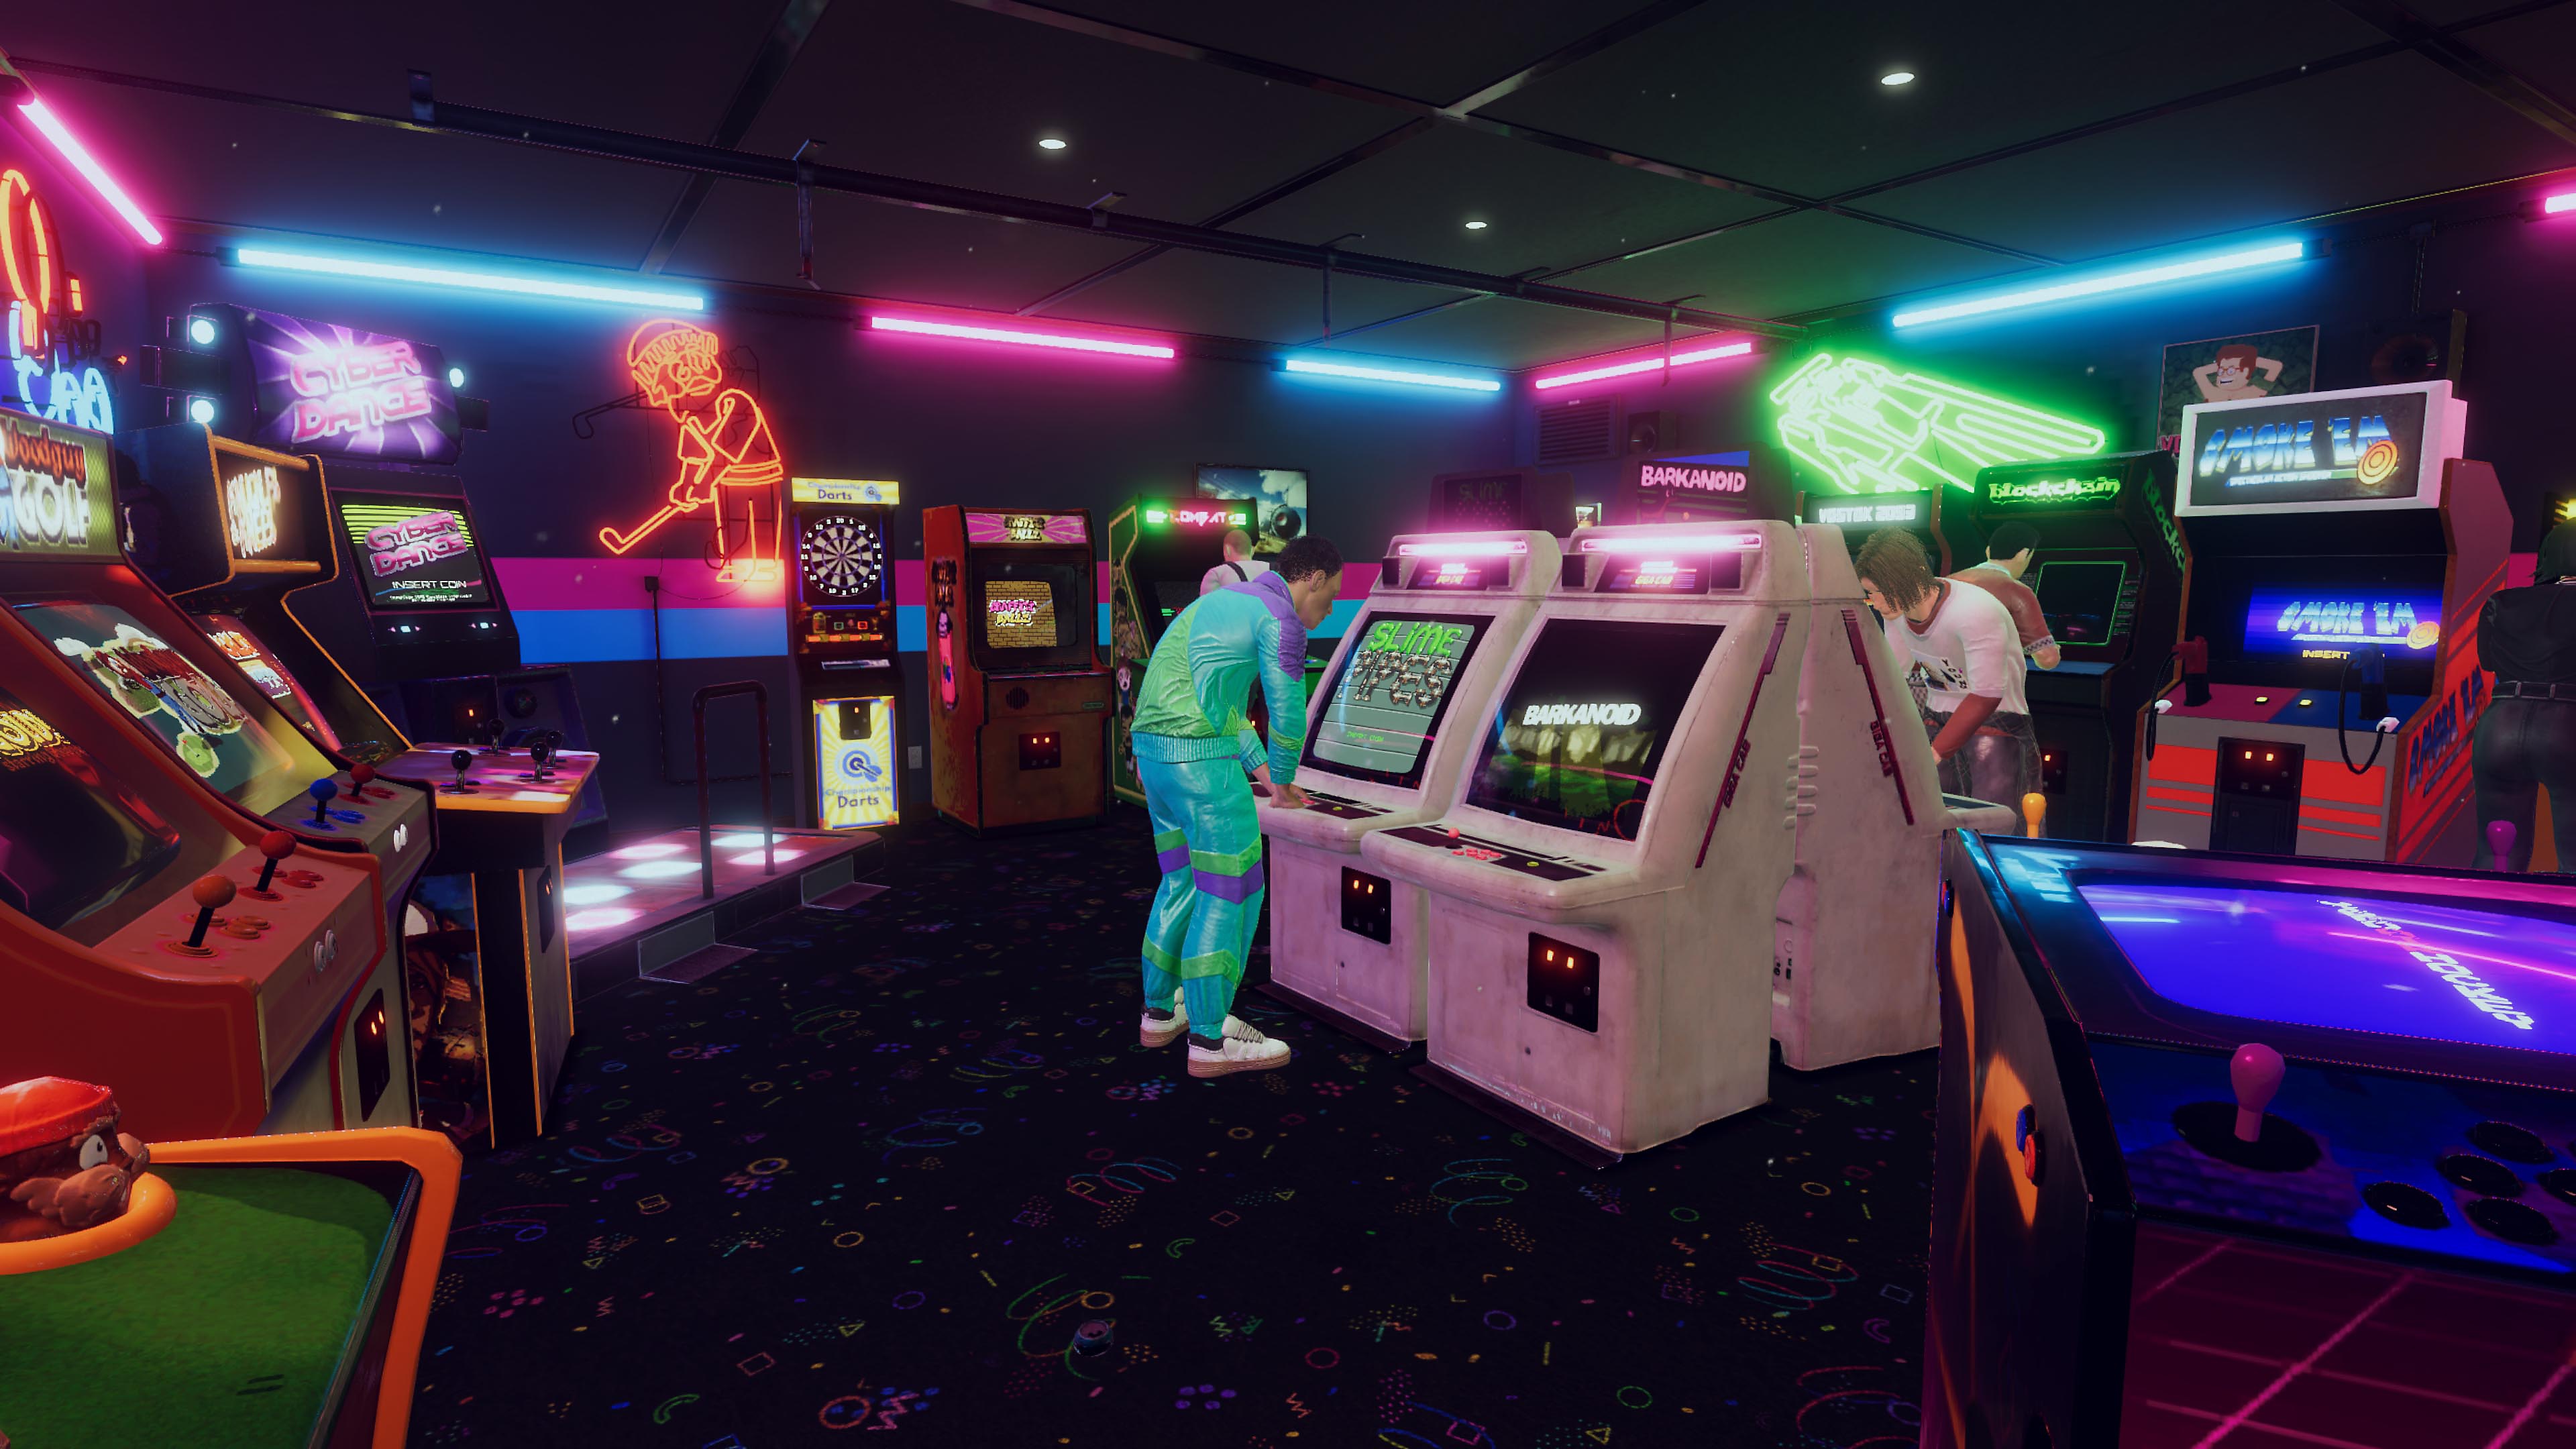 Arcade Paradise – snímek obrazovky zobrazující automatovou videohernu v retro stylu 90. let s modrými a růžovými neonovými světly